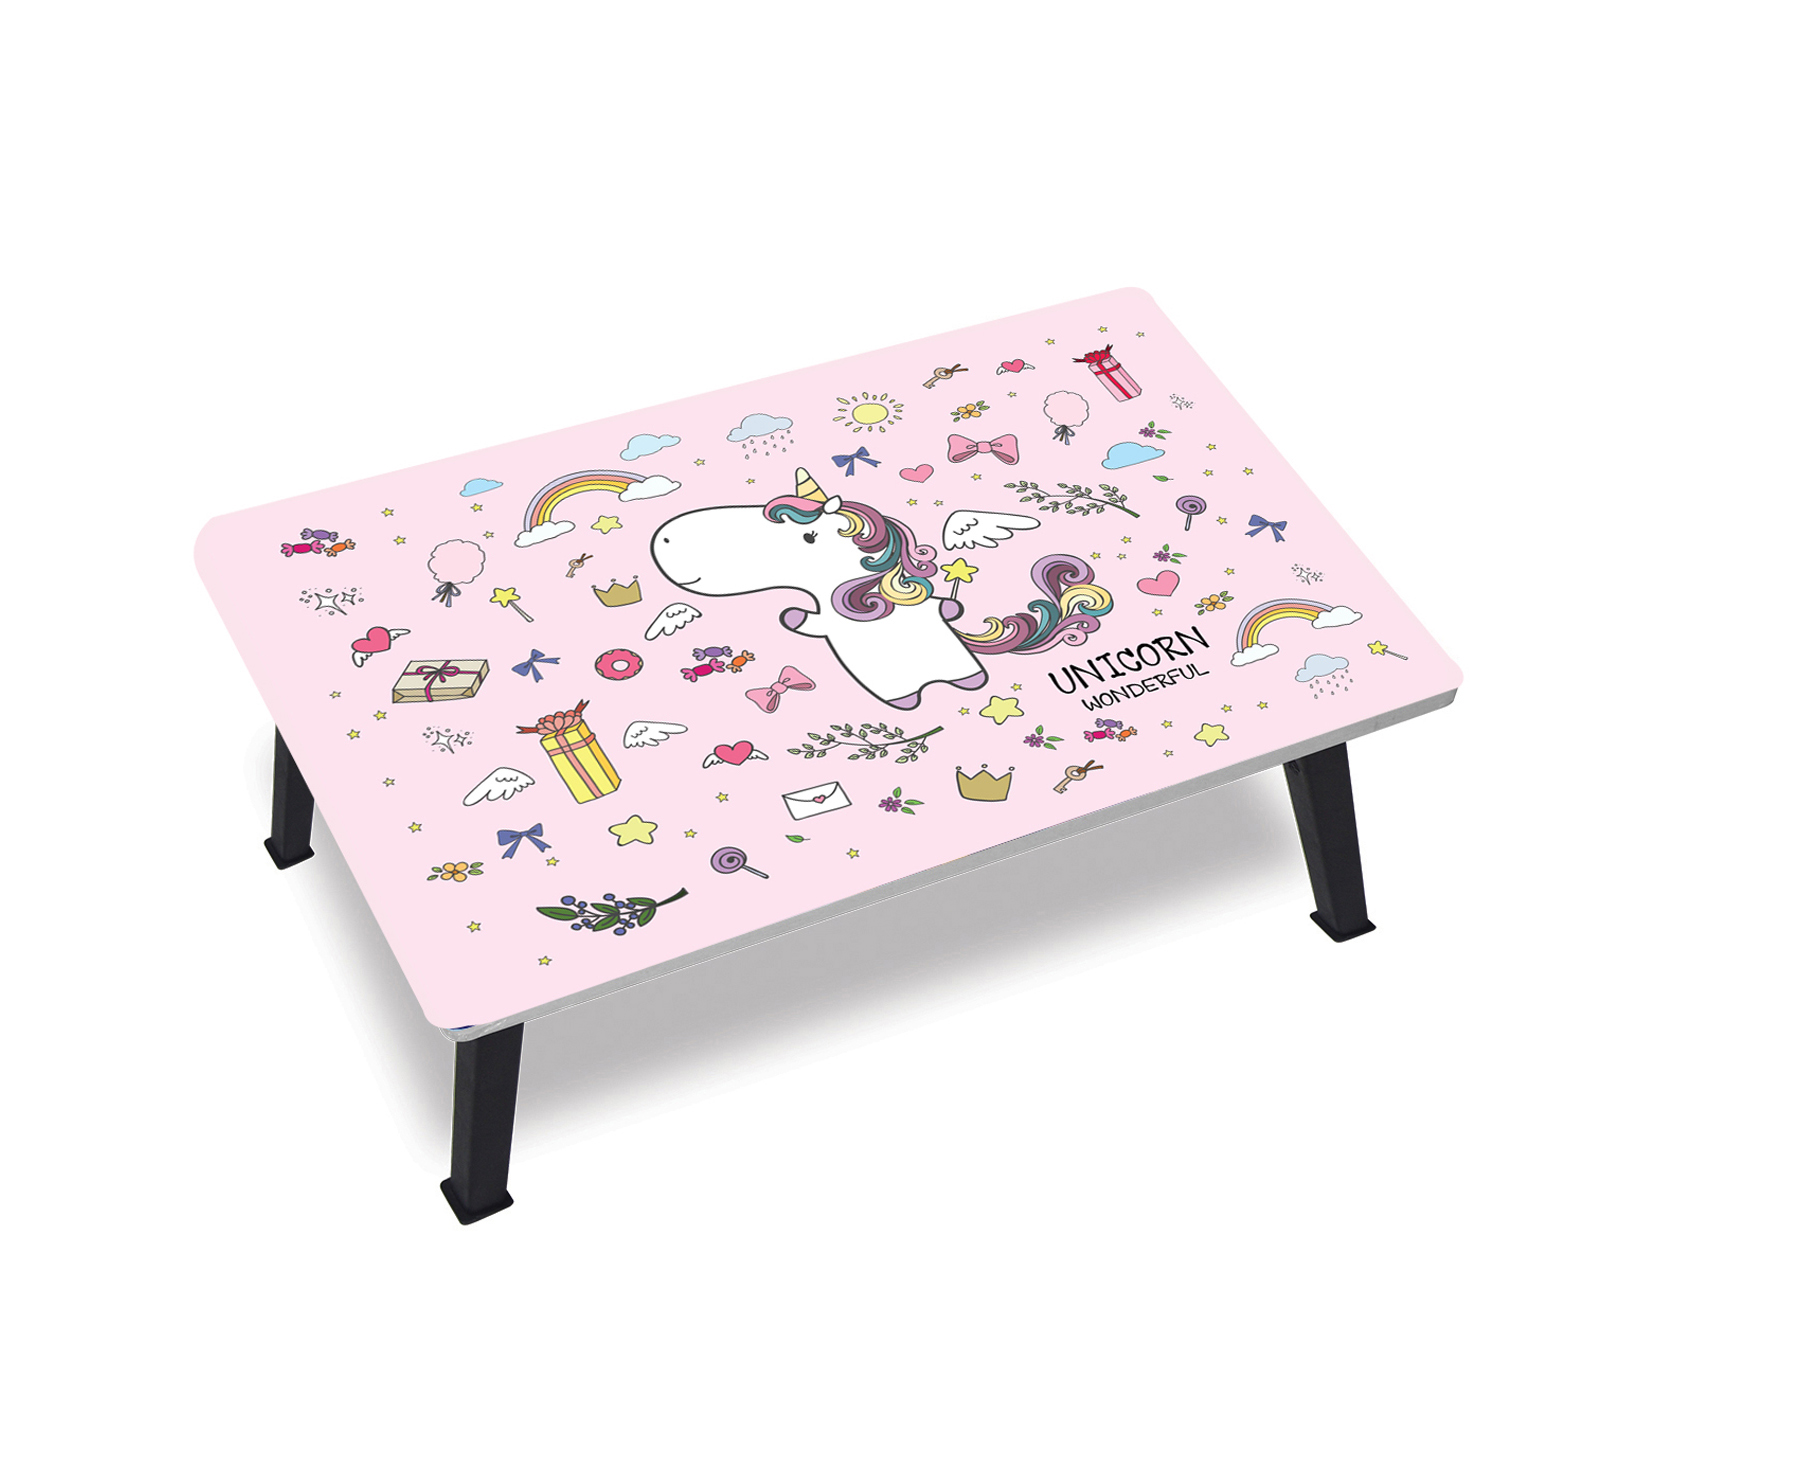 โต๊ะญี่ปุ่น โต๊ะญี่ปุ่นพับ โต๊ะทำการบ้าน โต๊ะเด็ก ลายการ์ตูน 40x60 ซม. ลาย Pony ราคาถูก โต๊บพับ โต๊ะญี่ปุ่นน่ารัก